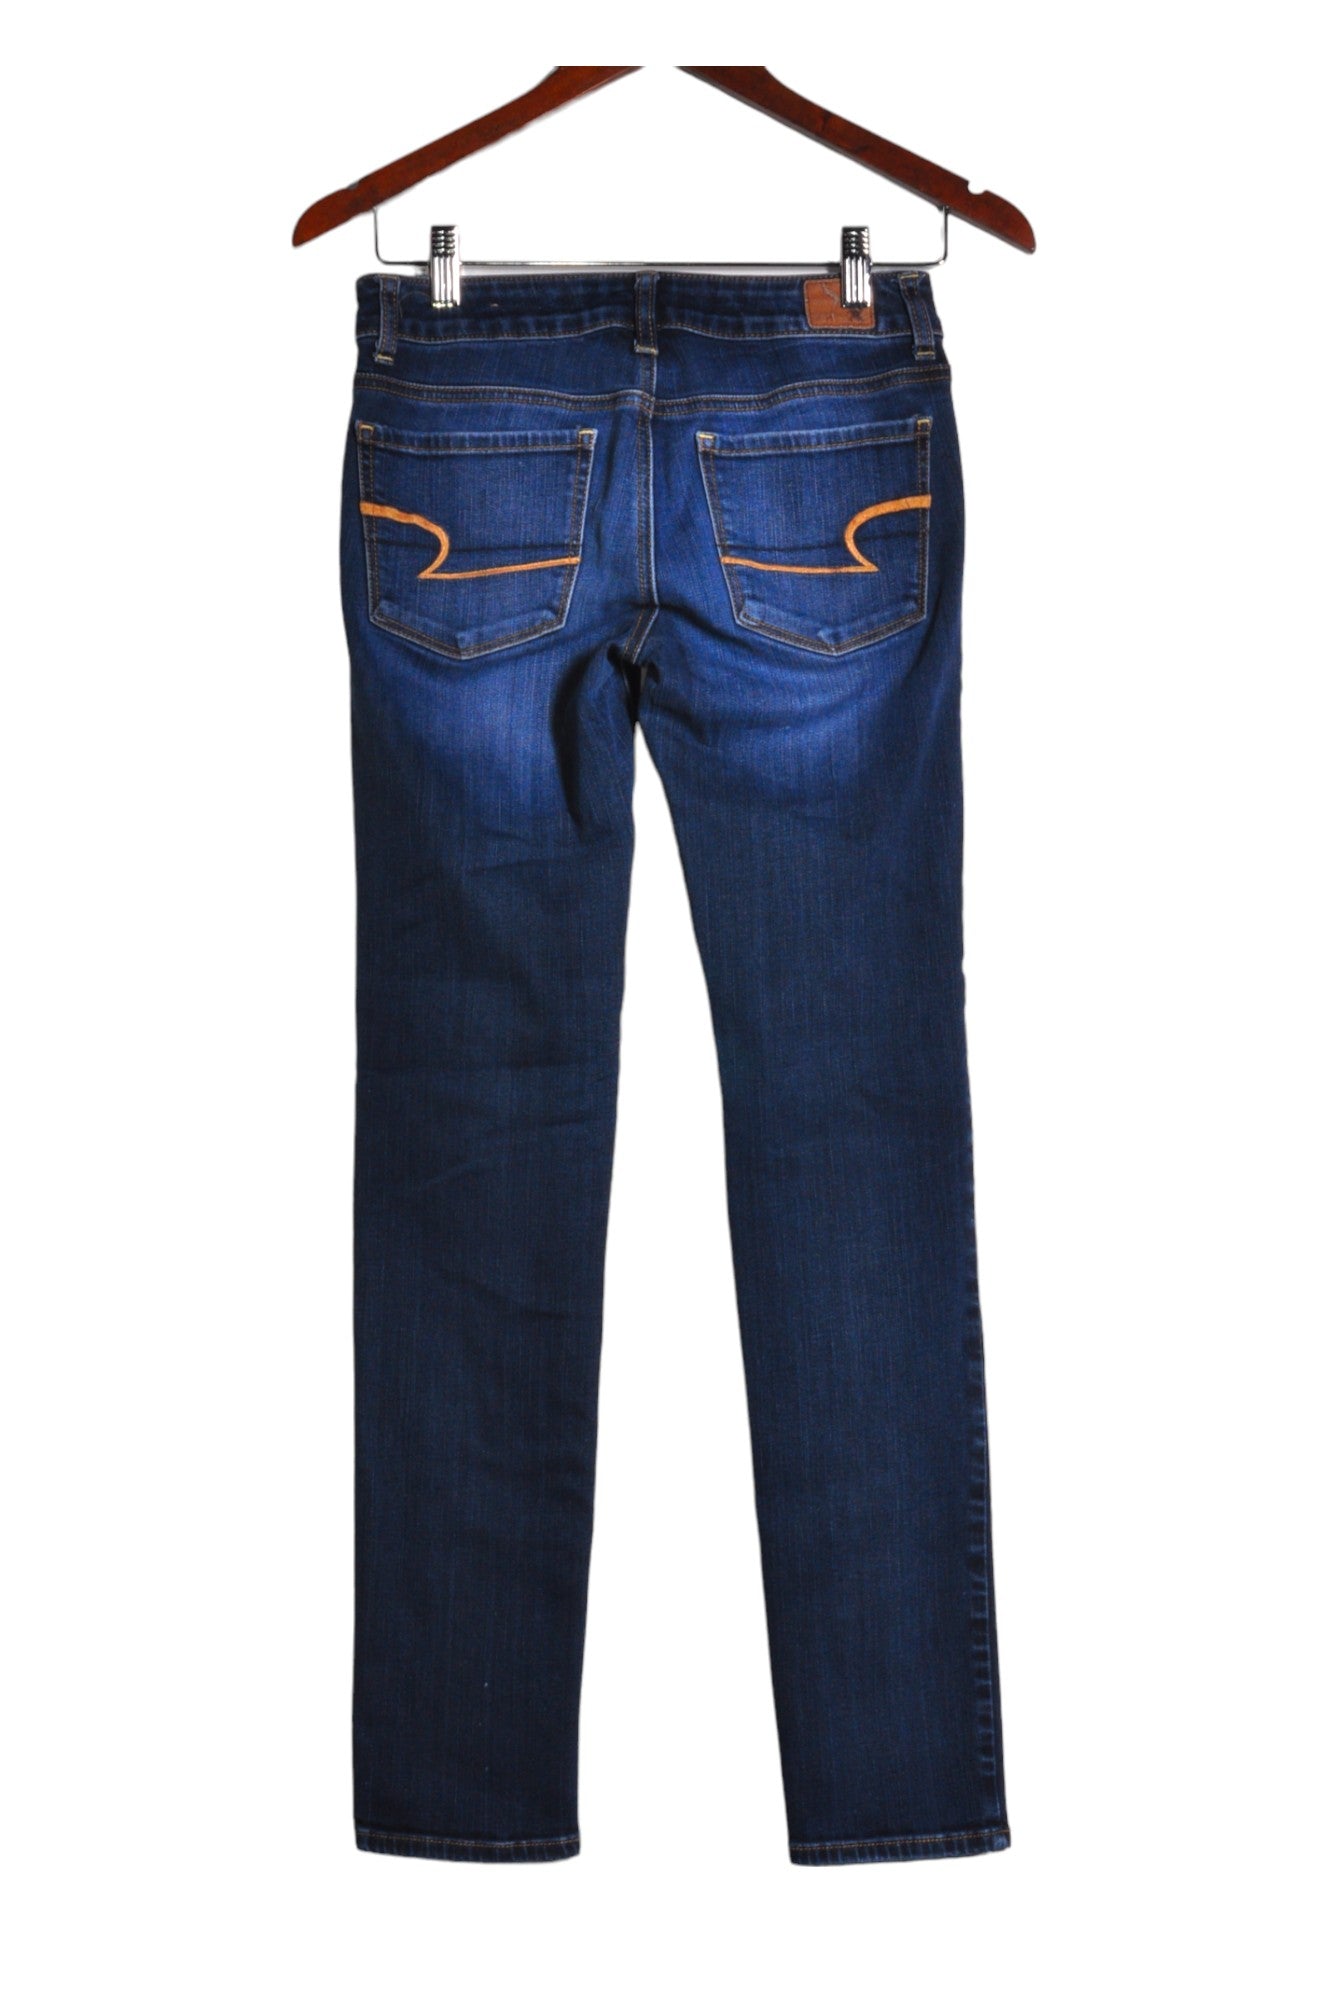 AMERICAN EAGLE Women Straight-Legged Jeans Regular fit in Blue - Size 2 | 16.9 $ KOOP